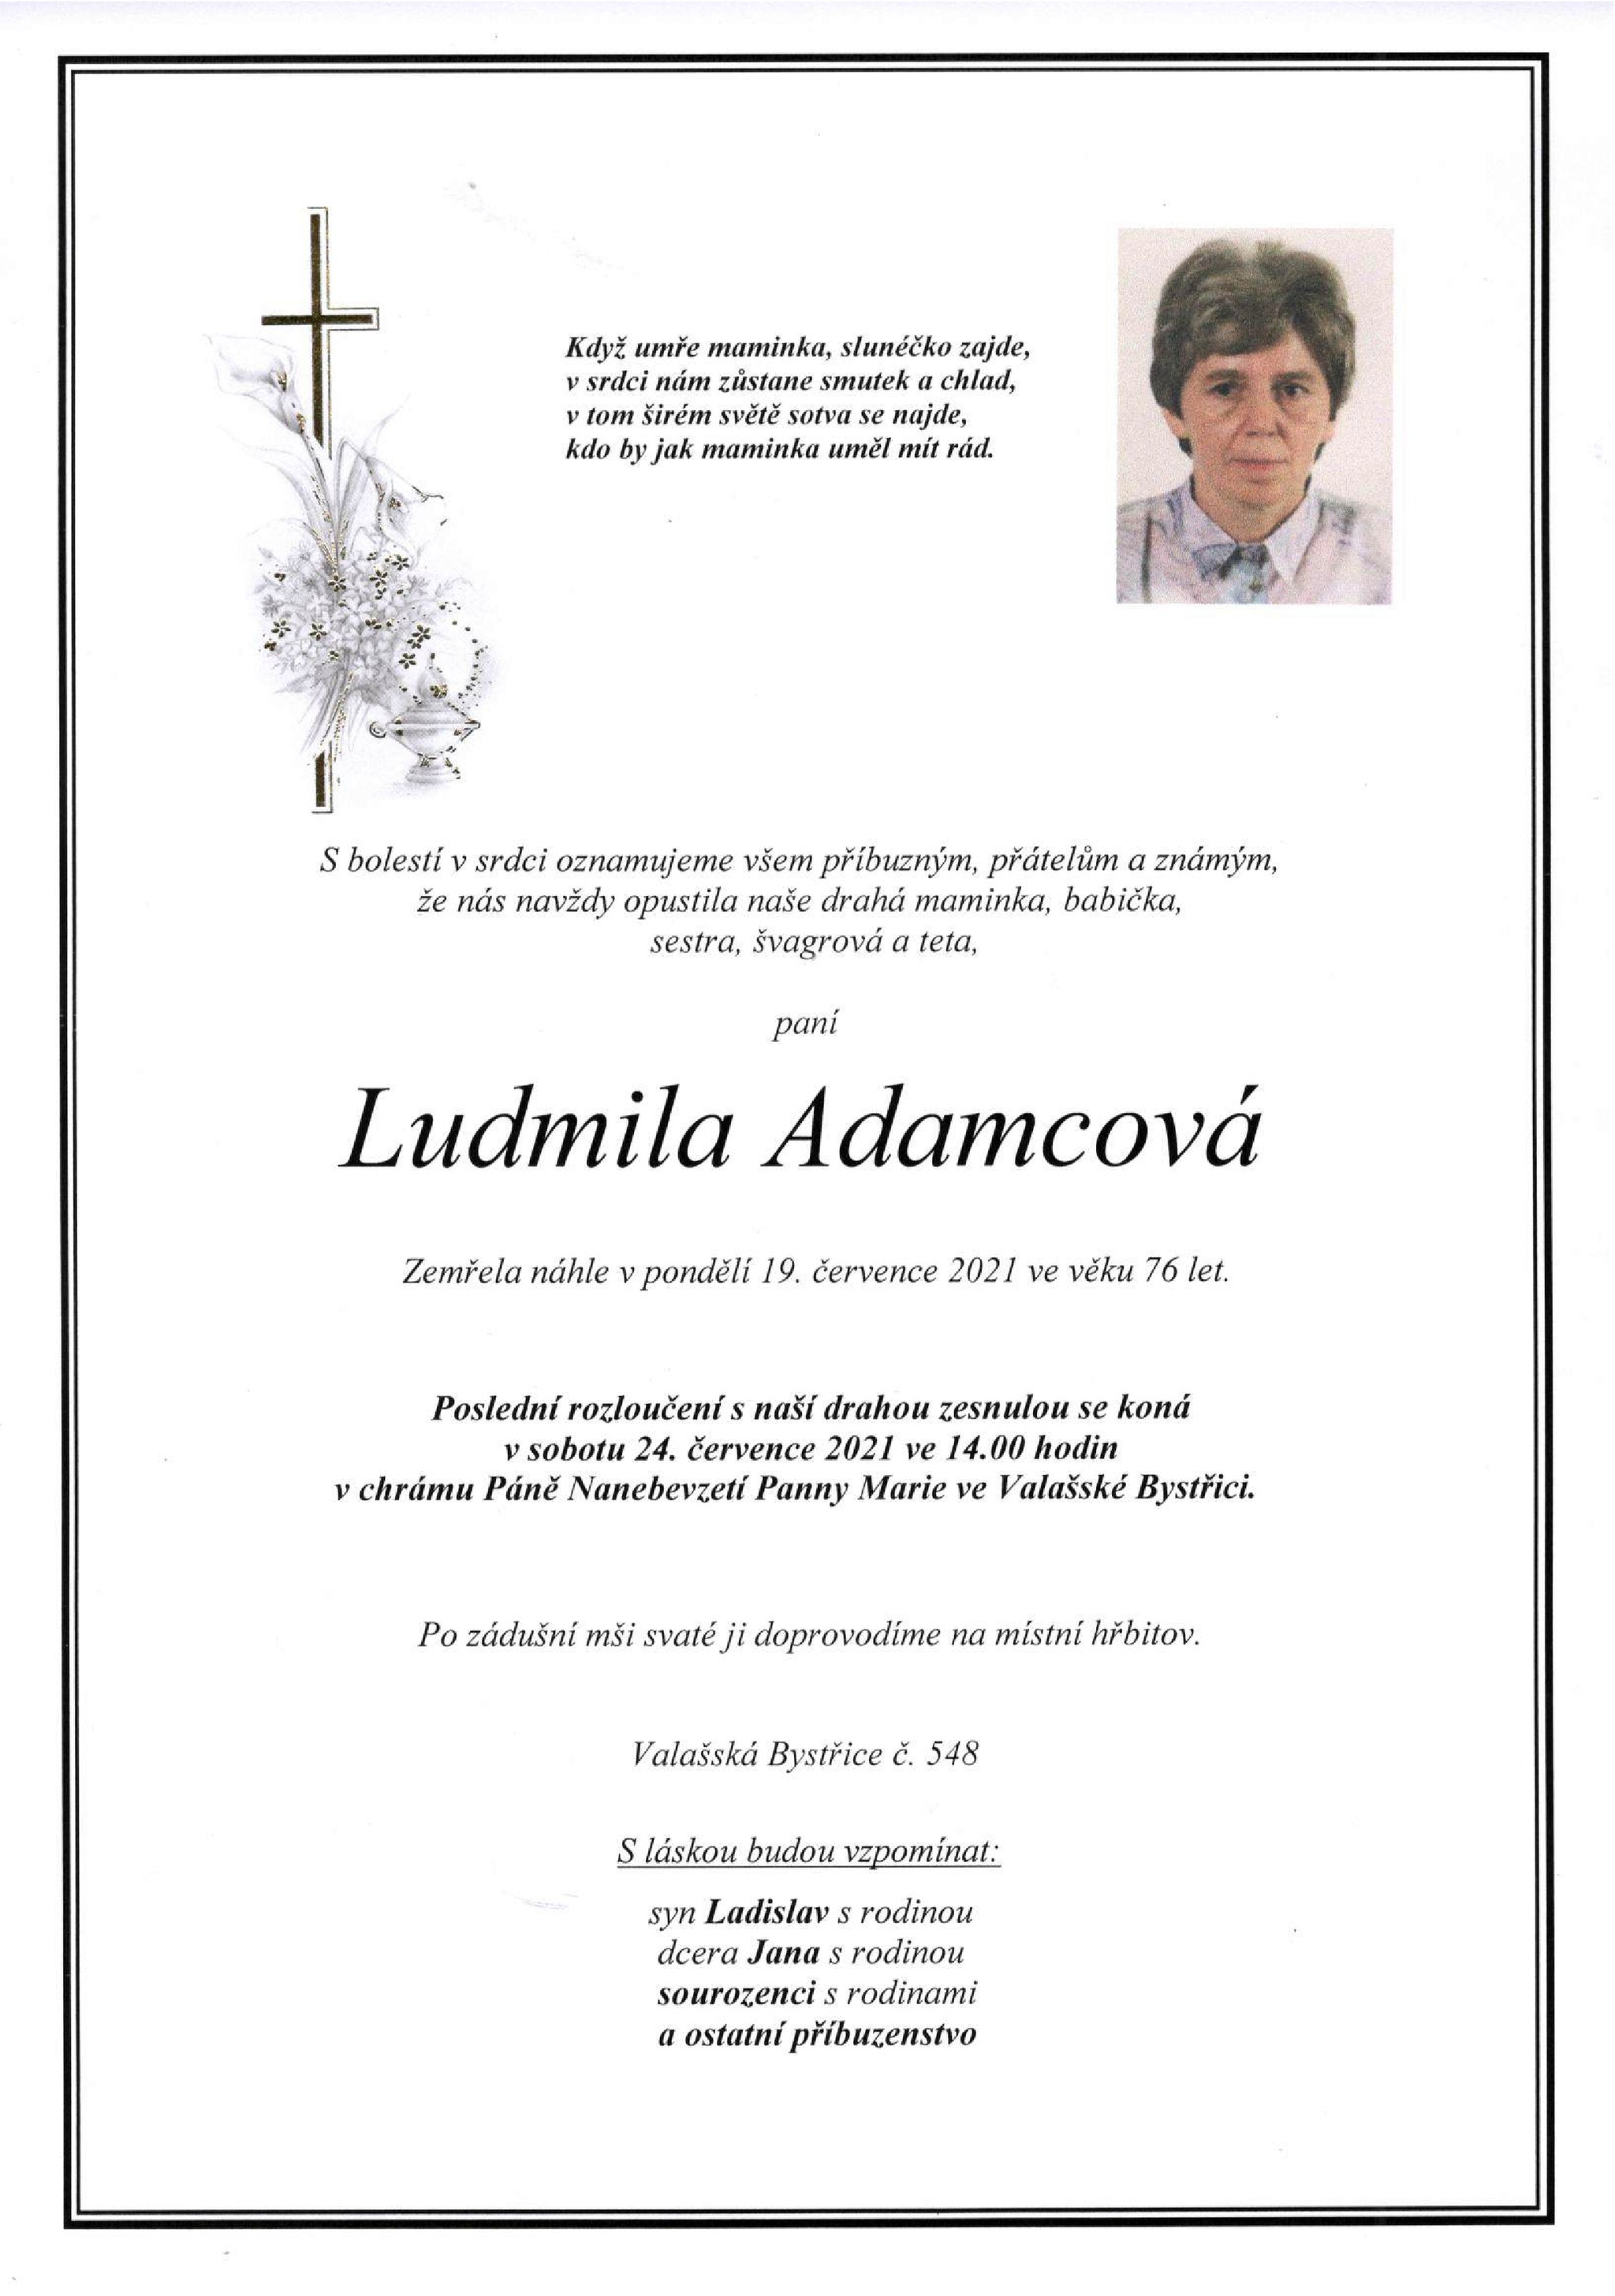 Ludmila Adamcová